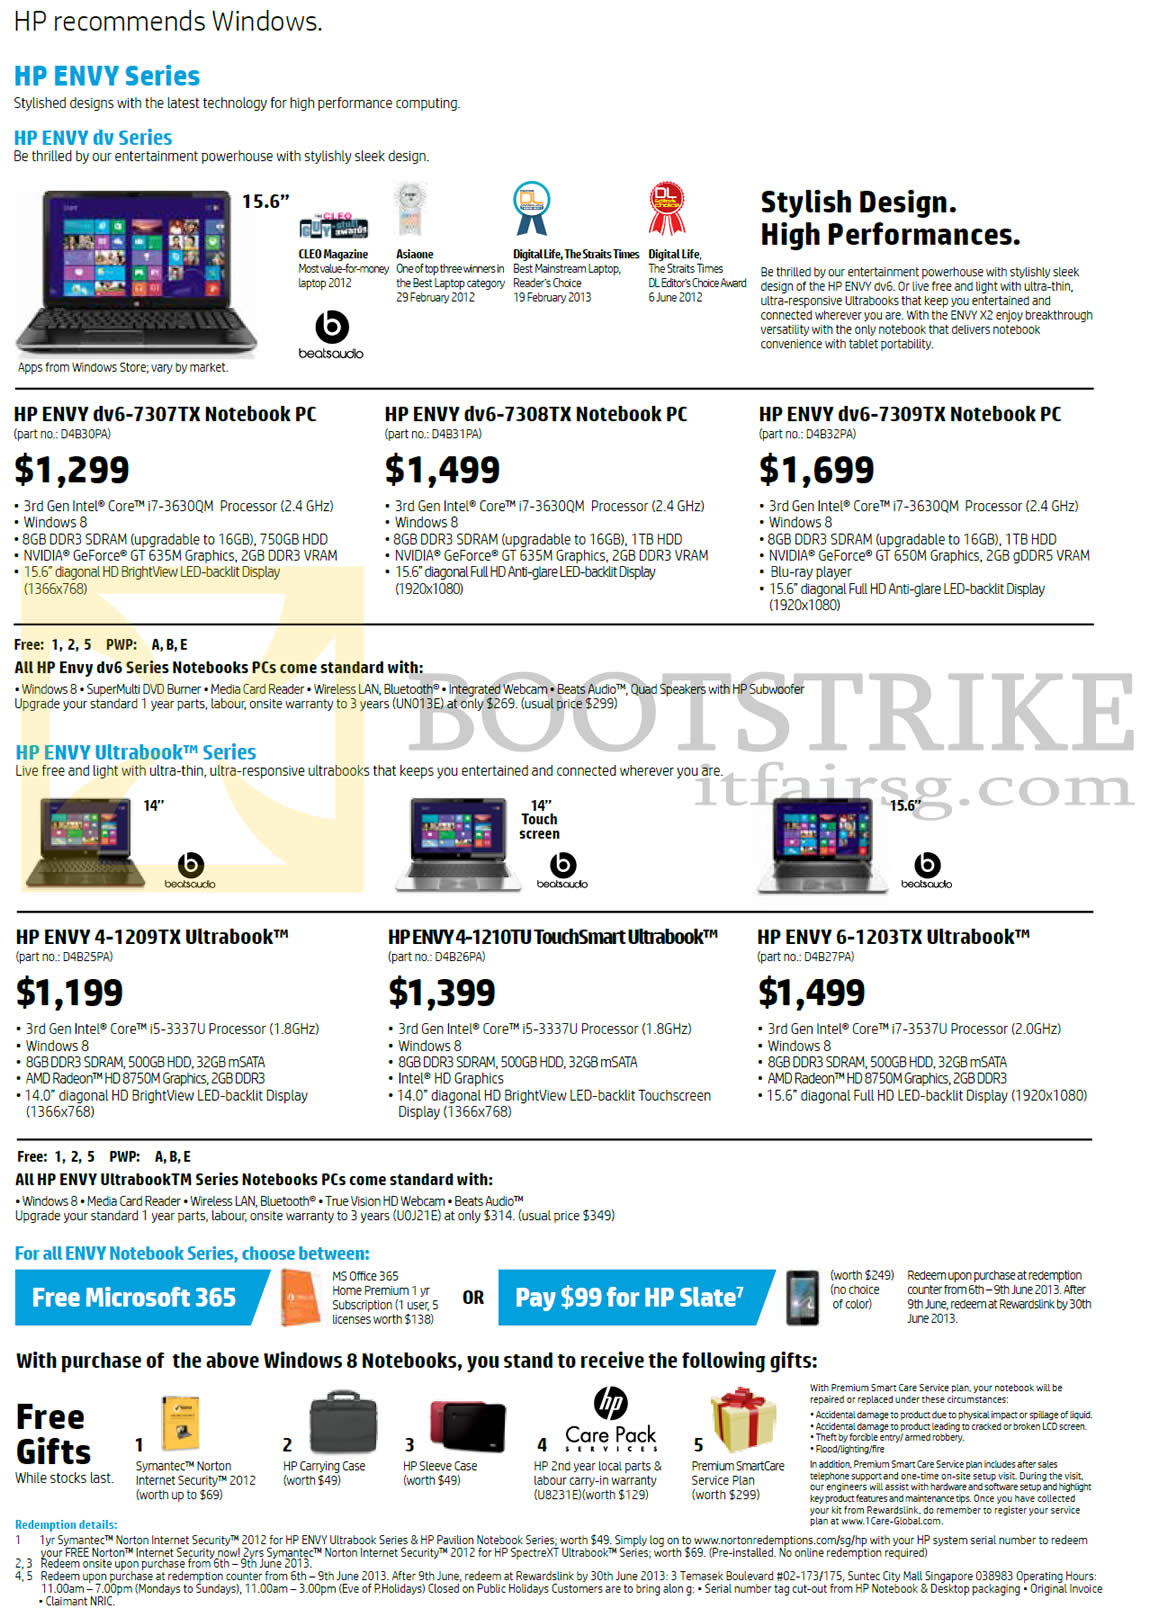 PC SHOW 2013 price list image brochure of HP Notebooks Envy Dv6-7307TX, 7308TX, 7309Tx, Envy 4-1209TX, 1210TU, Envy 6-1203TX